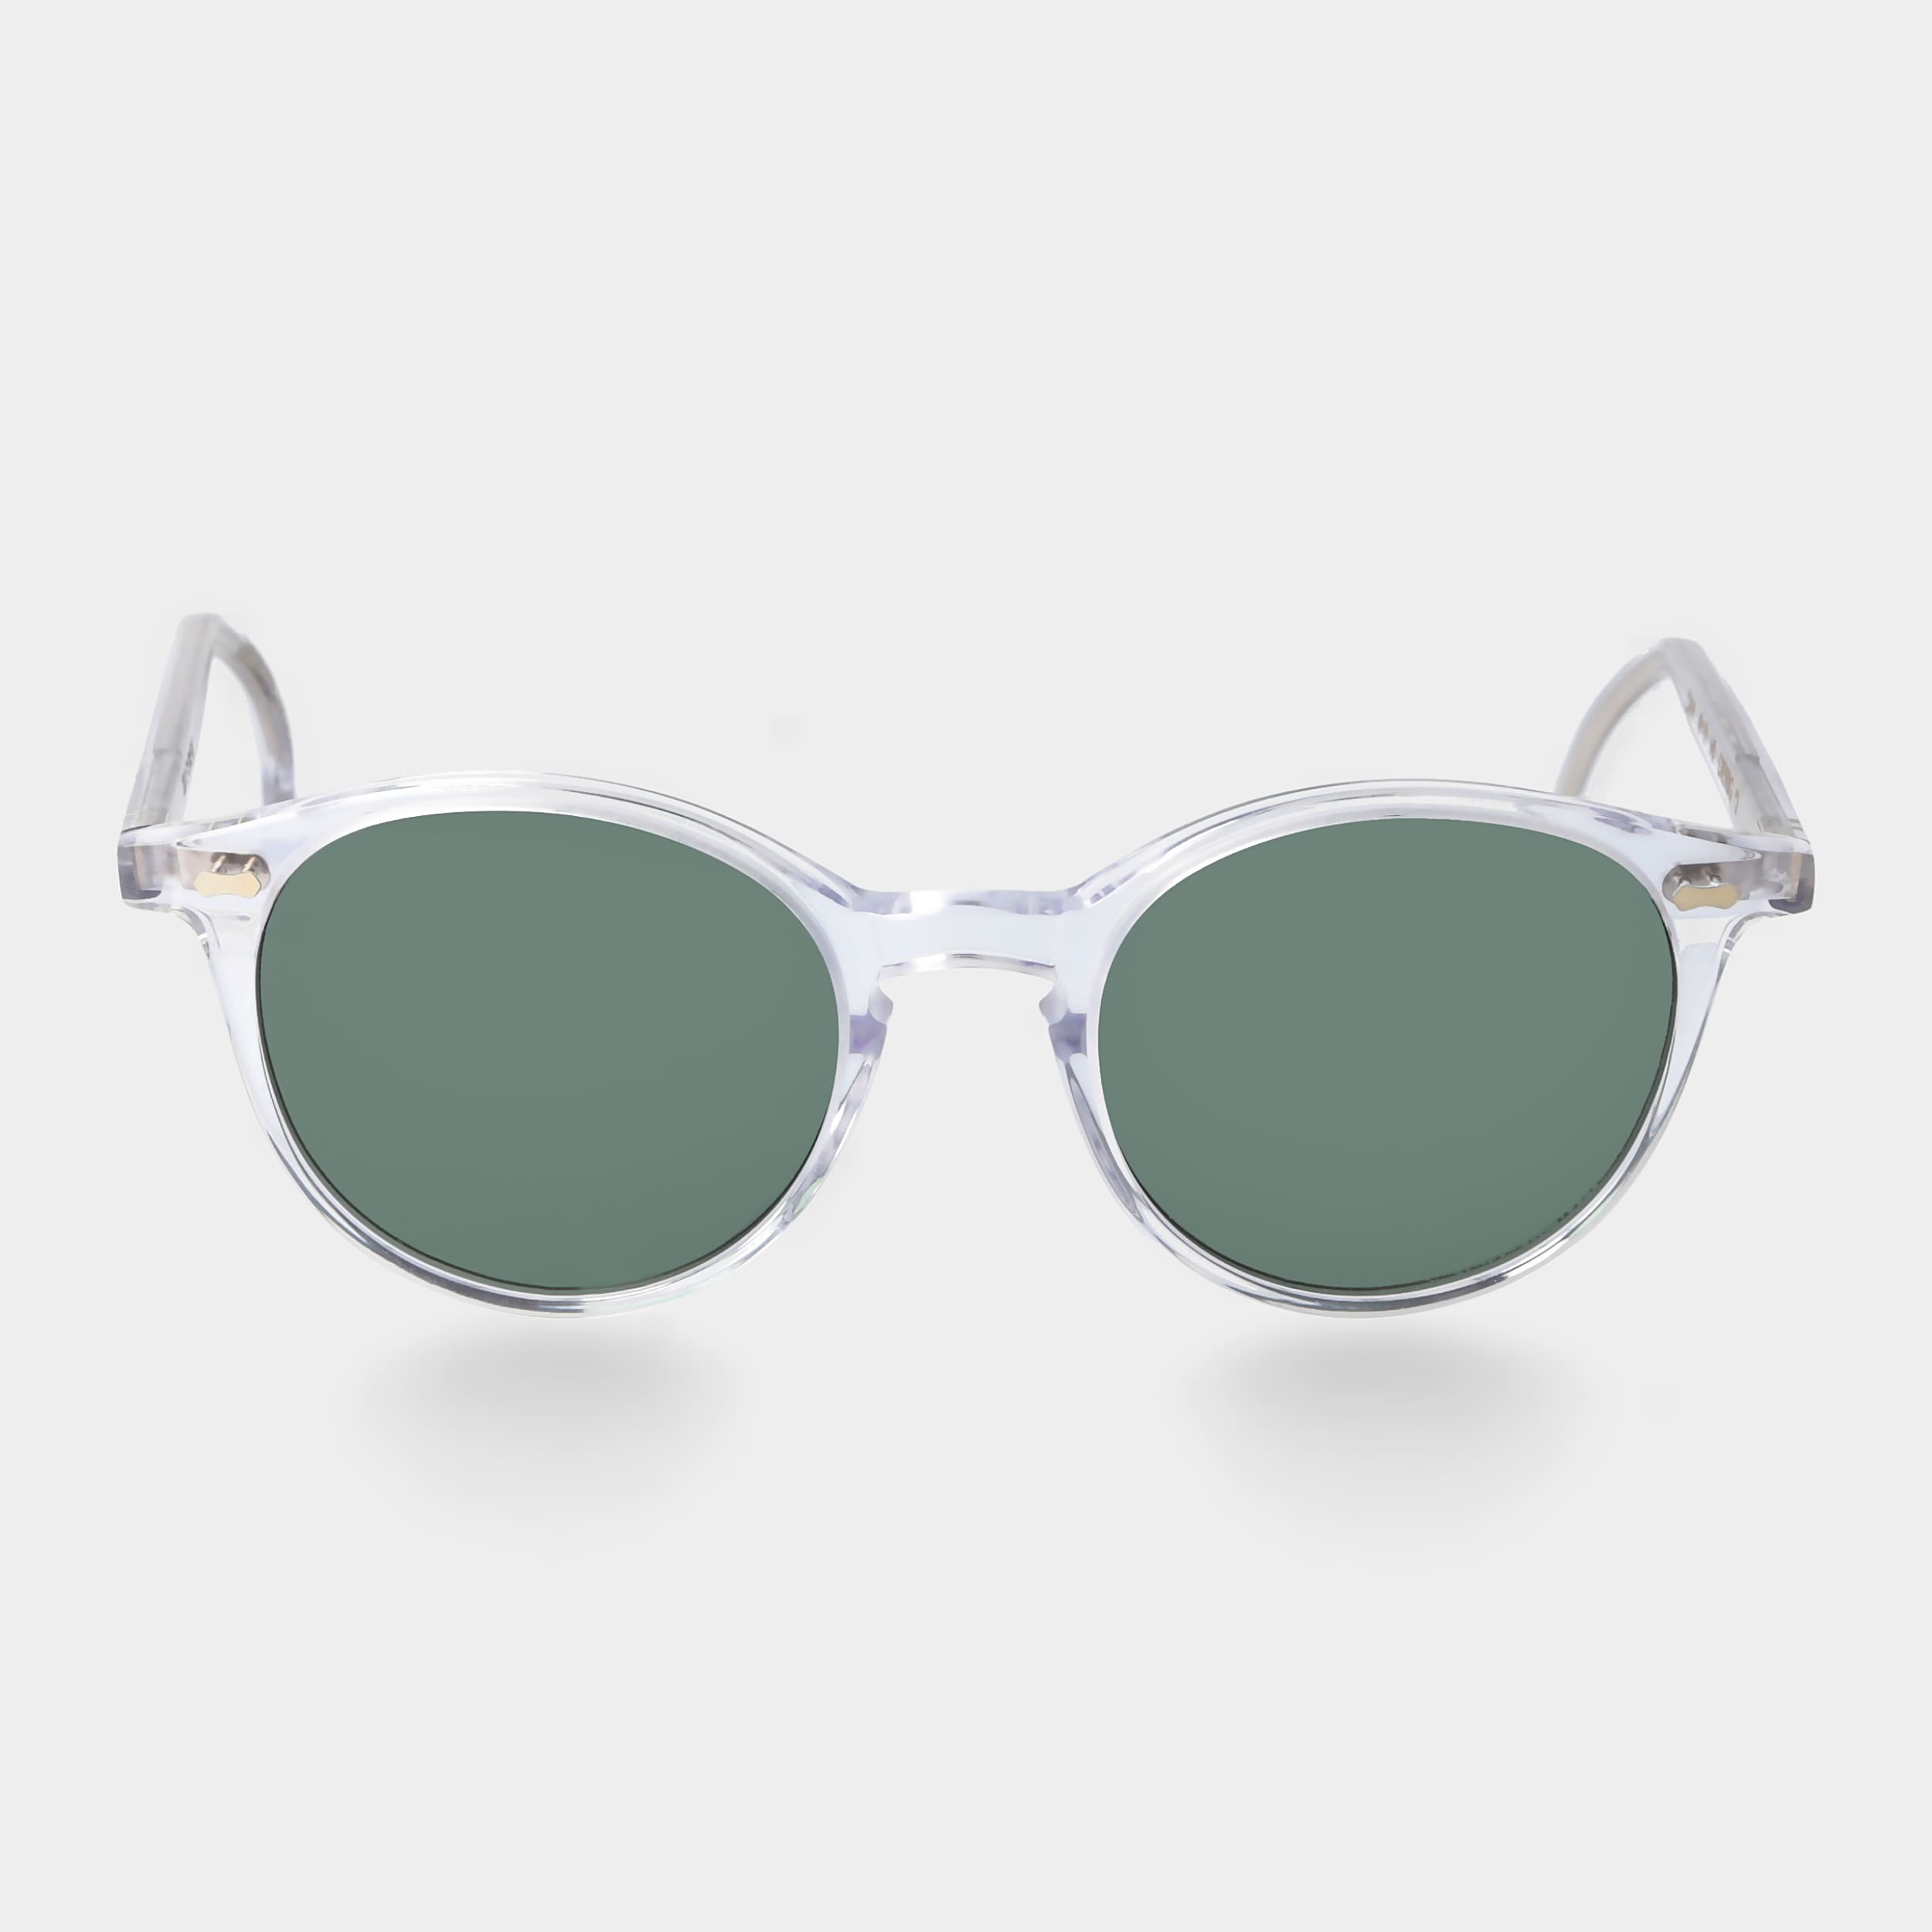 Sonnenbrille mit klarem Rahmen und polarisierten Gläsern | TBD Eyewear